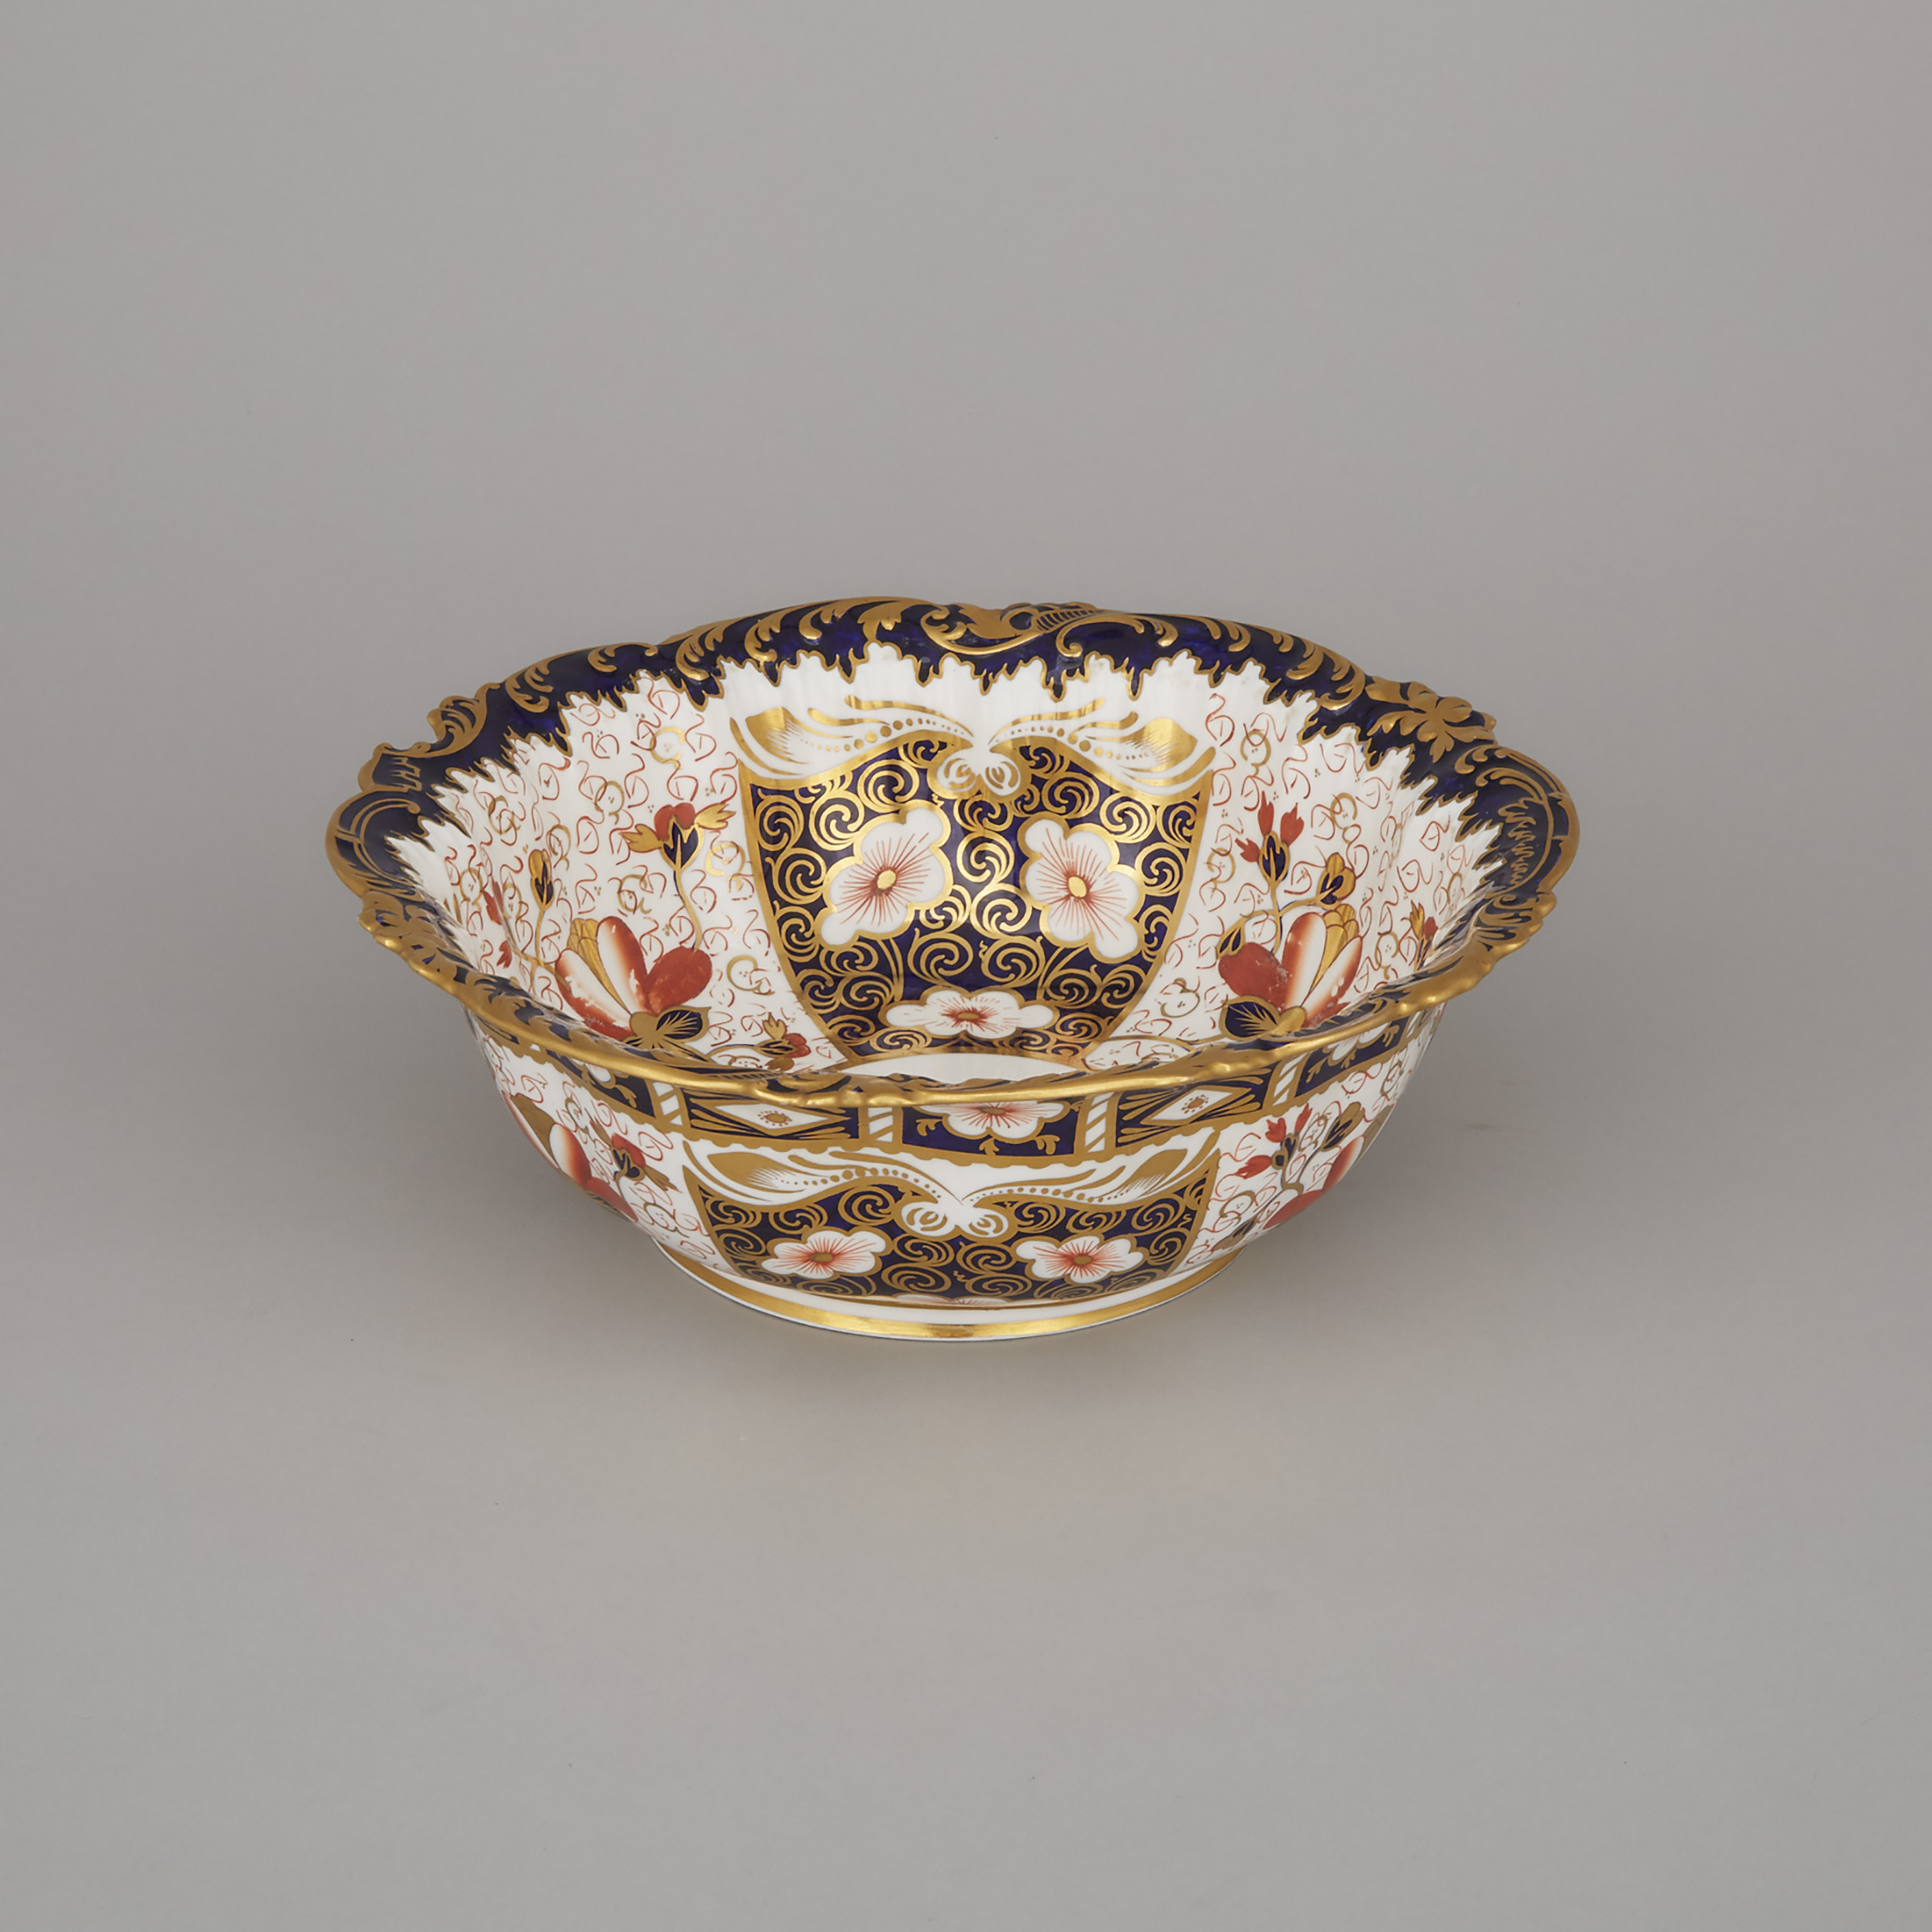 Royal Crown Derby 'Imari' (2451) Pattern Fruit Bowl, 1910